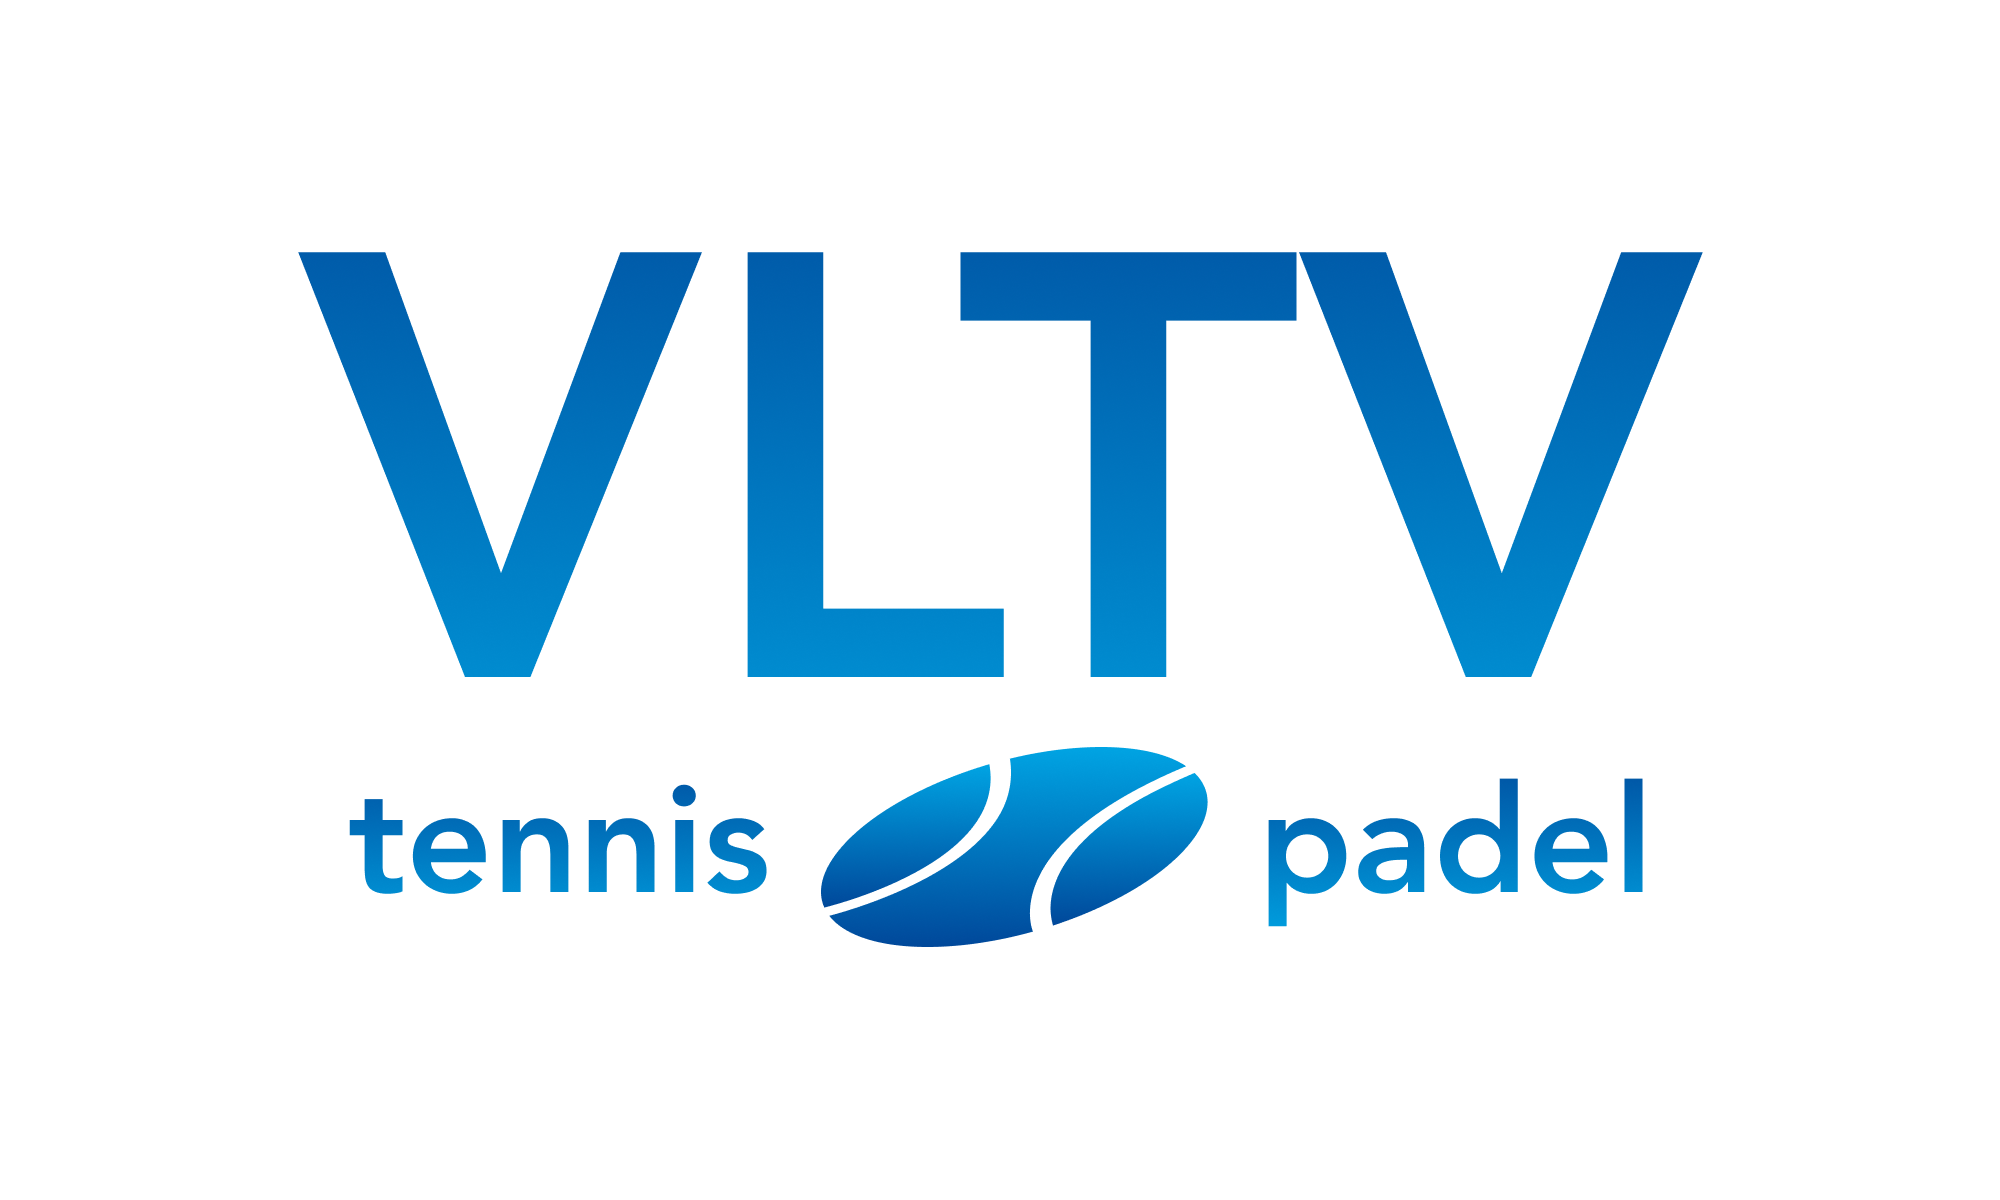 VLTV